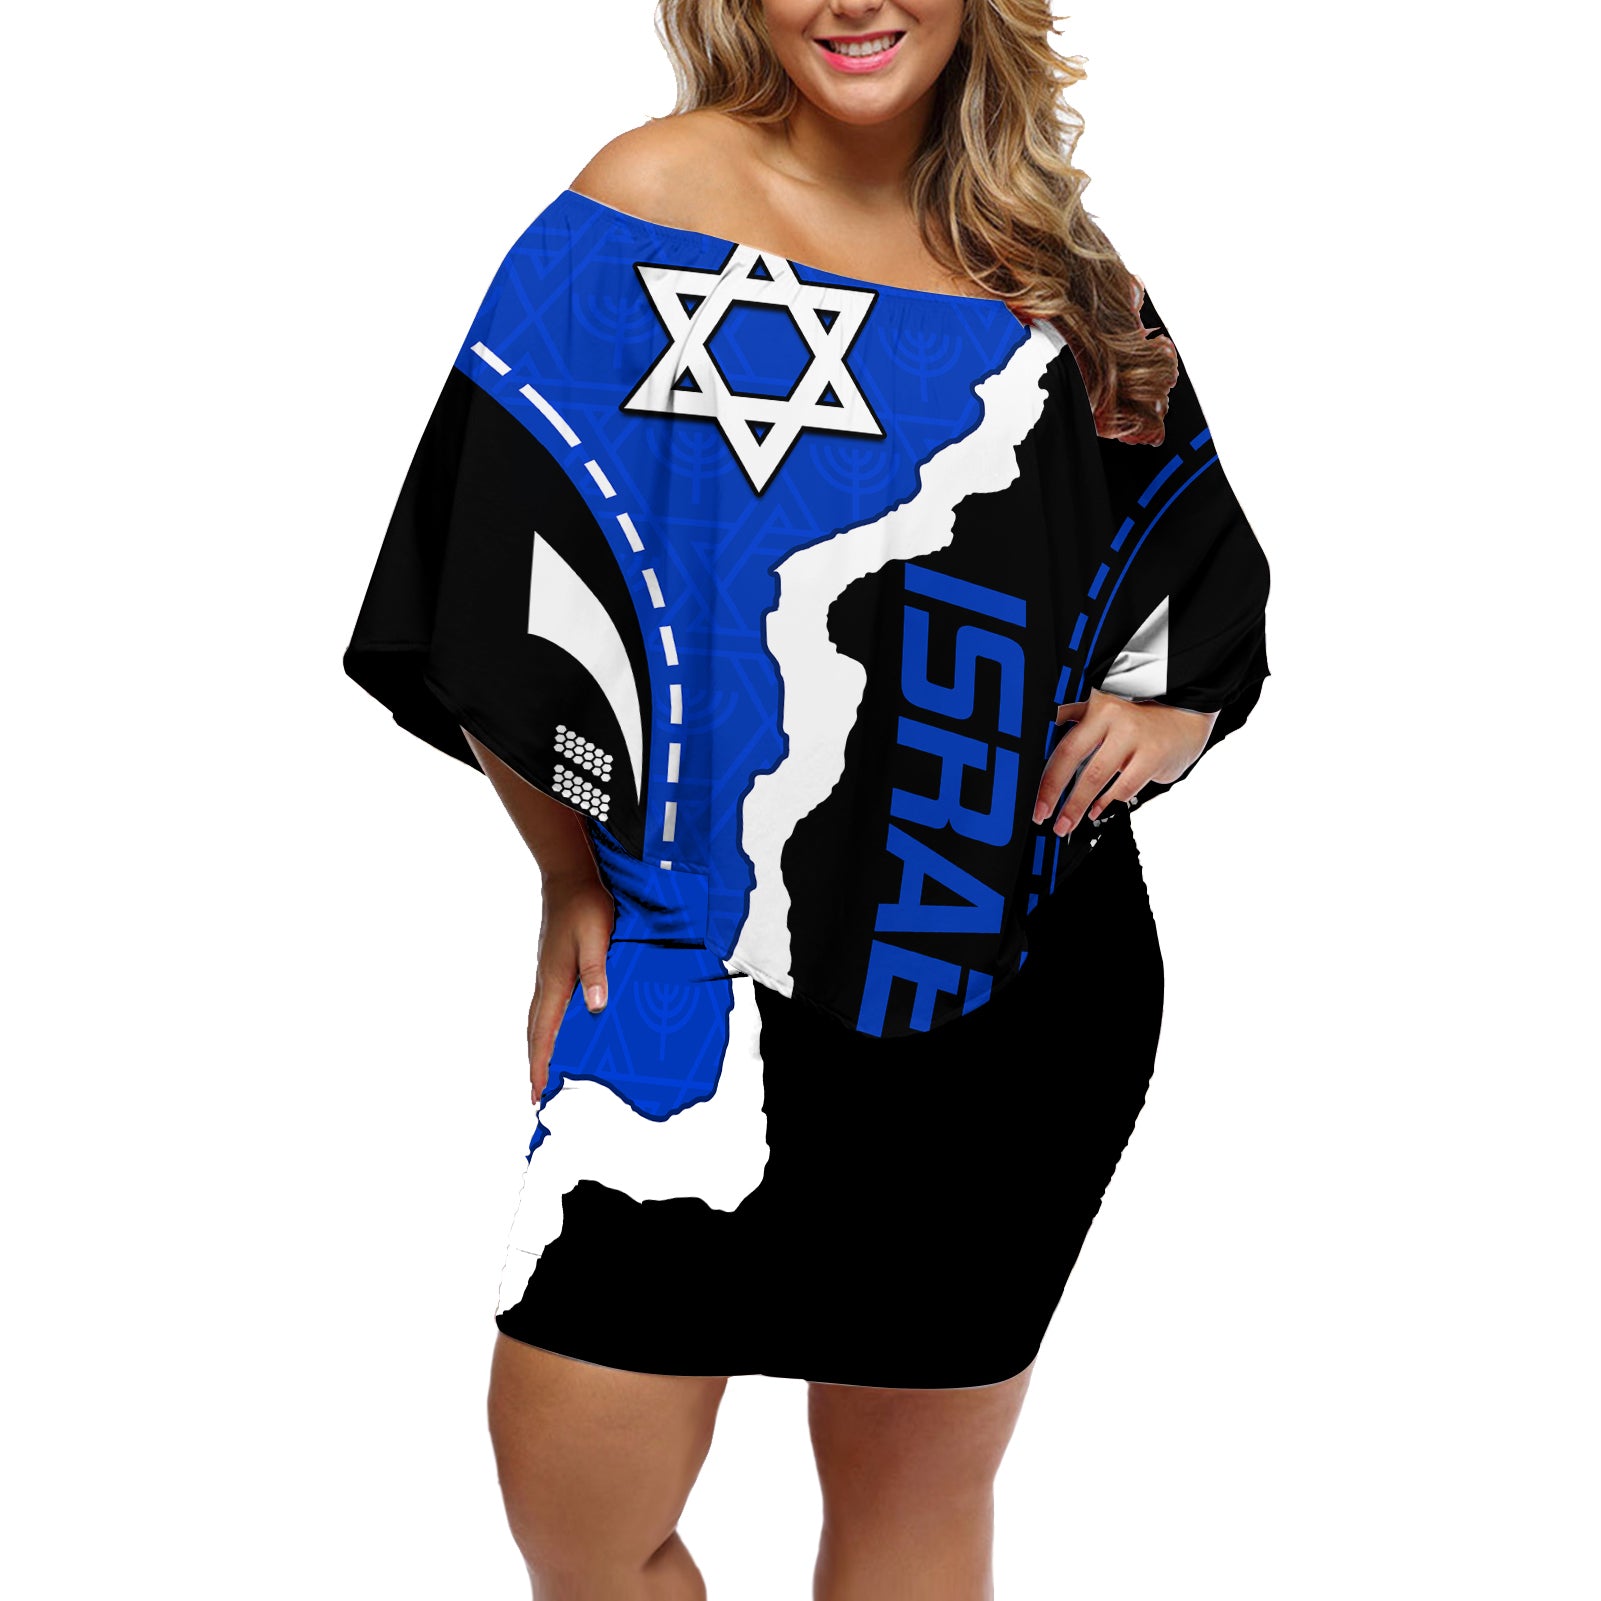 israel-off-shoulder-short-dress-stars-of-david-sporty-style